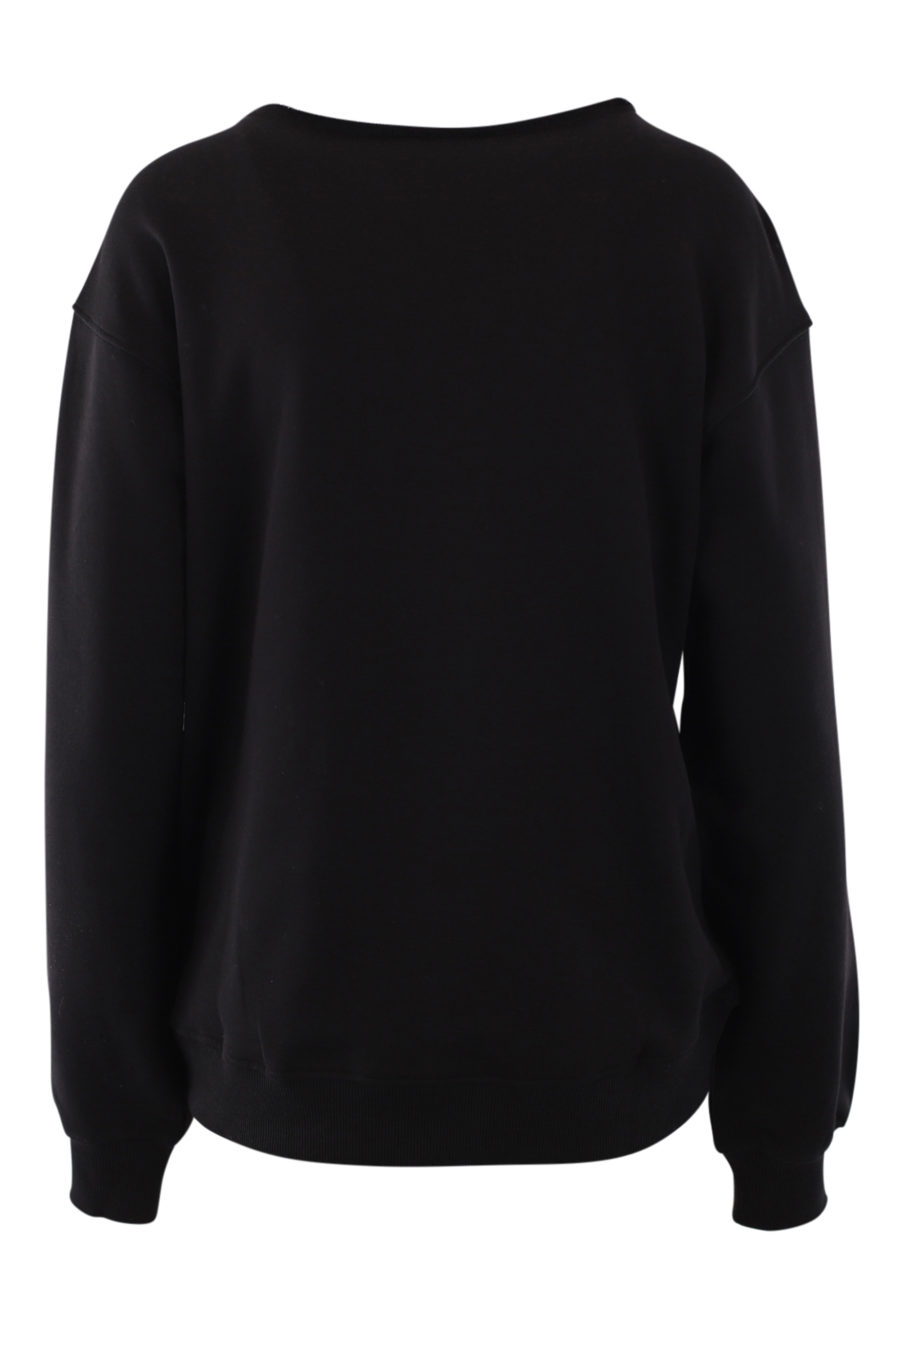 Schwarzes Sweatshirt mit Blumenlogo - IMG 0878